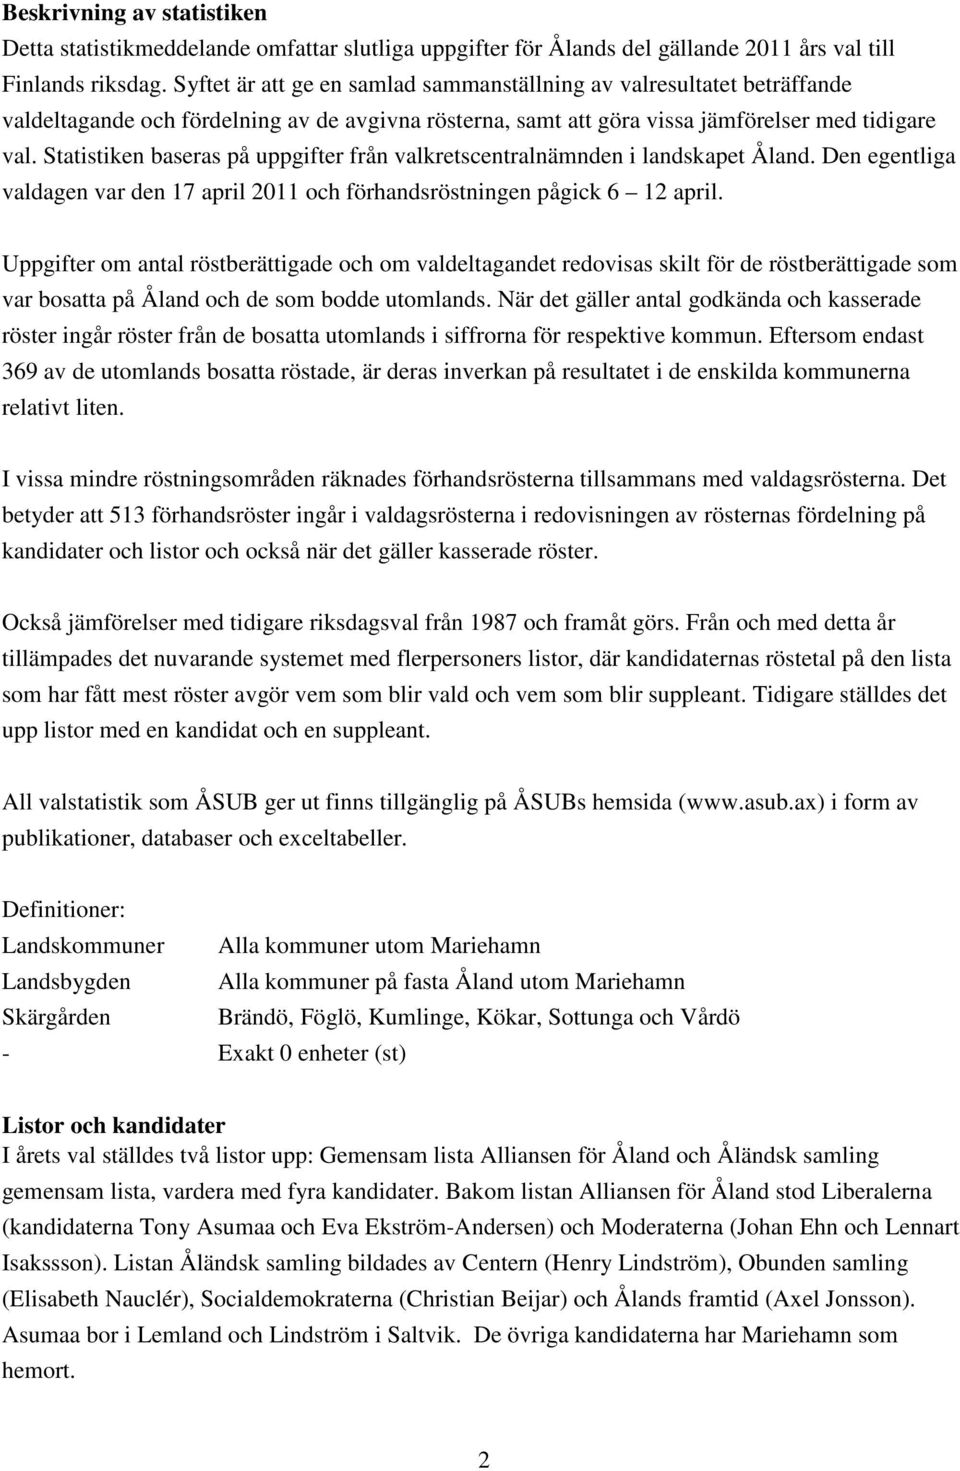 Statistiken baseras på uppgifter från valkretscentralnämnden i landskapet Åland. Den egentliga valdagen var den 17 april 211 och förhandsröstningen pågick 6 12 april.